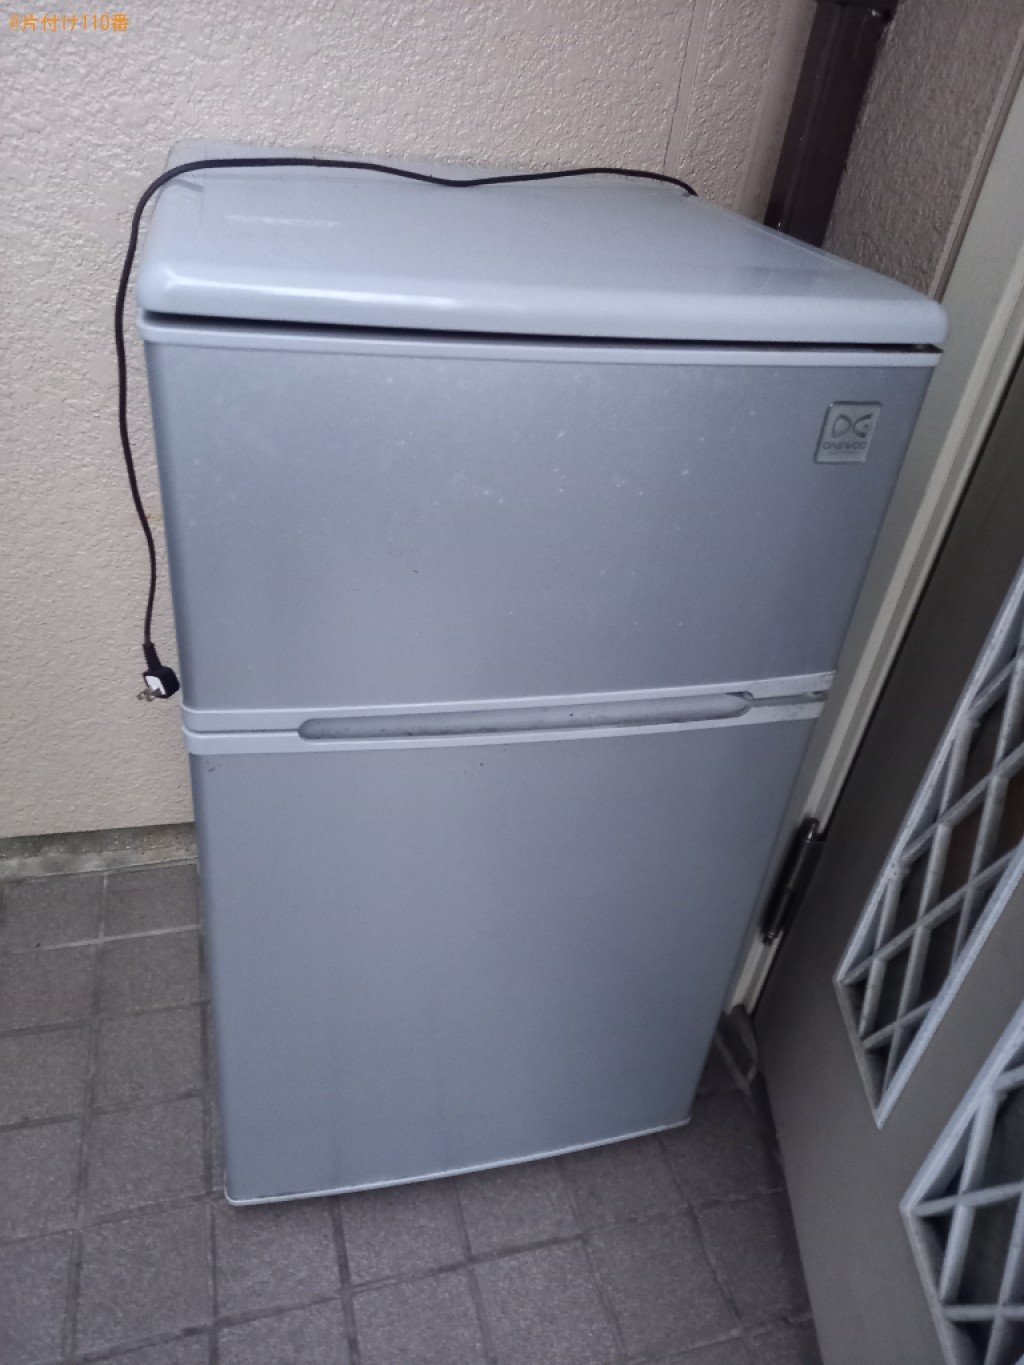 【東大和市】170L未満冷蔵庫の出張不用品回収・処分ご依頼